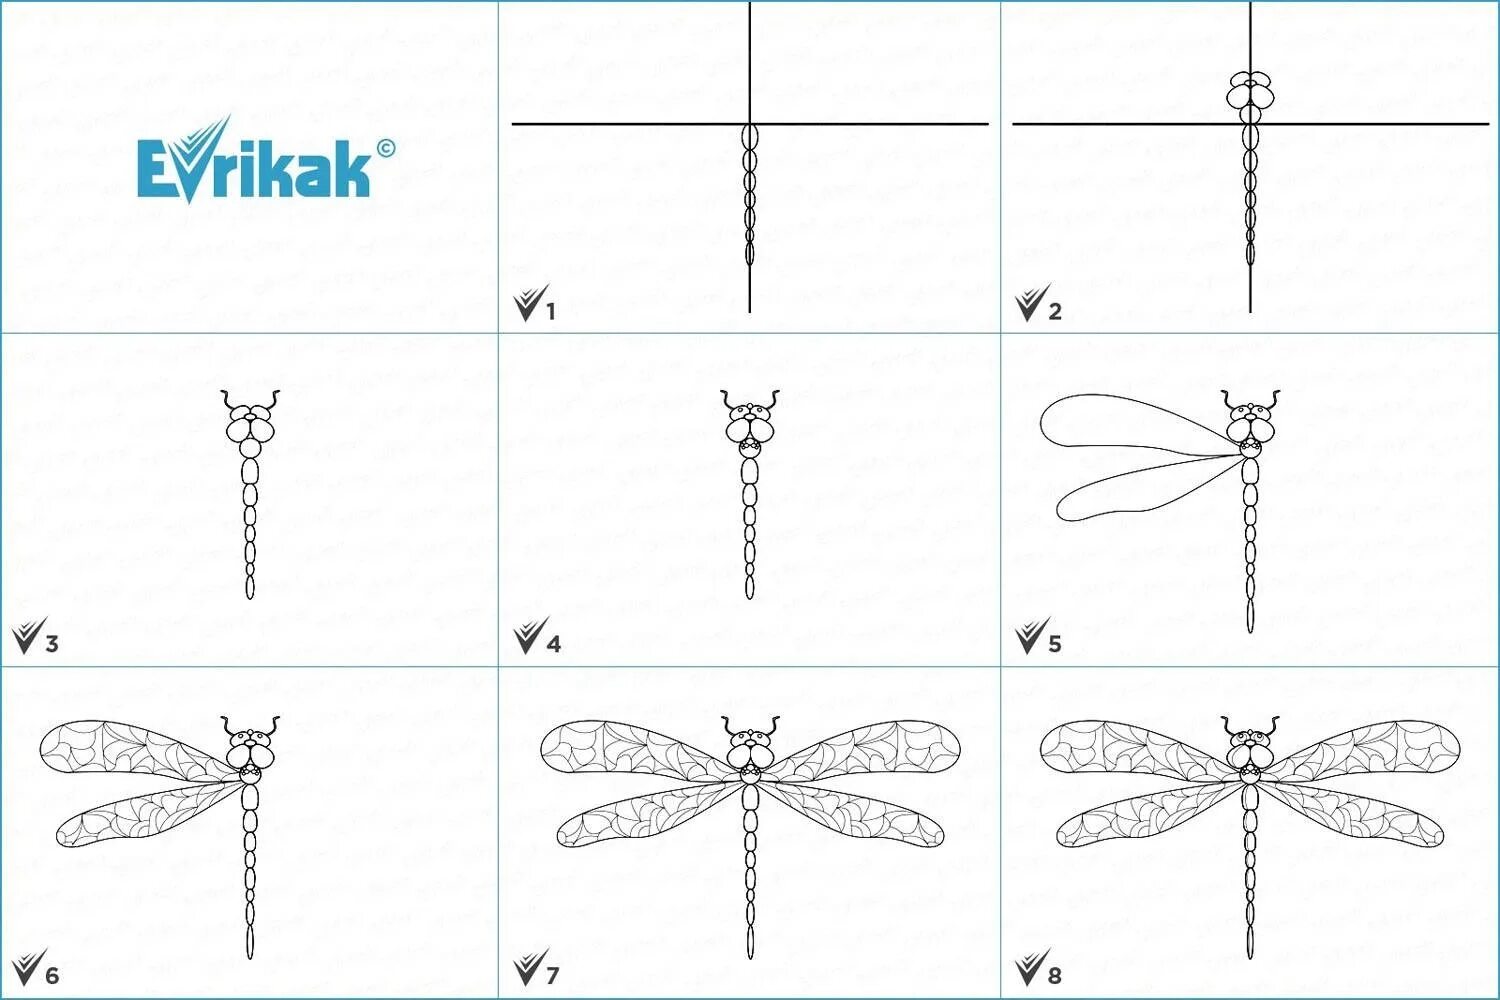 Рисование симметричных форм: насекомые - бабочка, Стрекоза, Жук .. Рисование симметричных форм насекомые бабочка Стрекоза Жук по выбору. Поэтапное рисование Стрекозы. Стрекоза рисунок поэтапно.